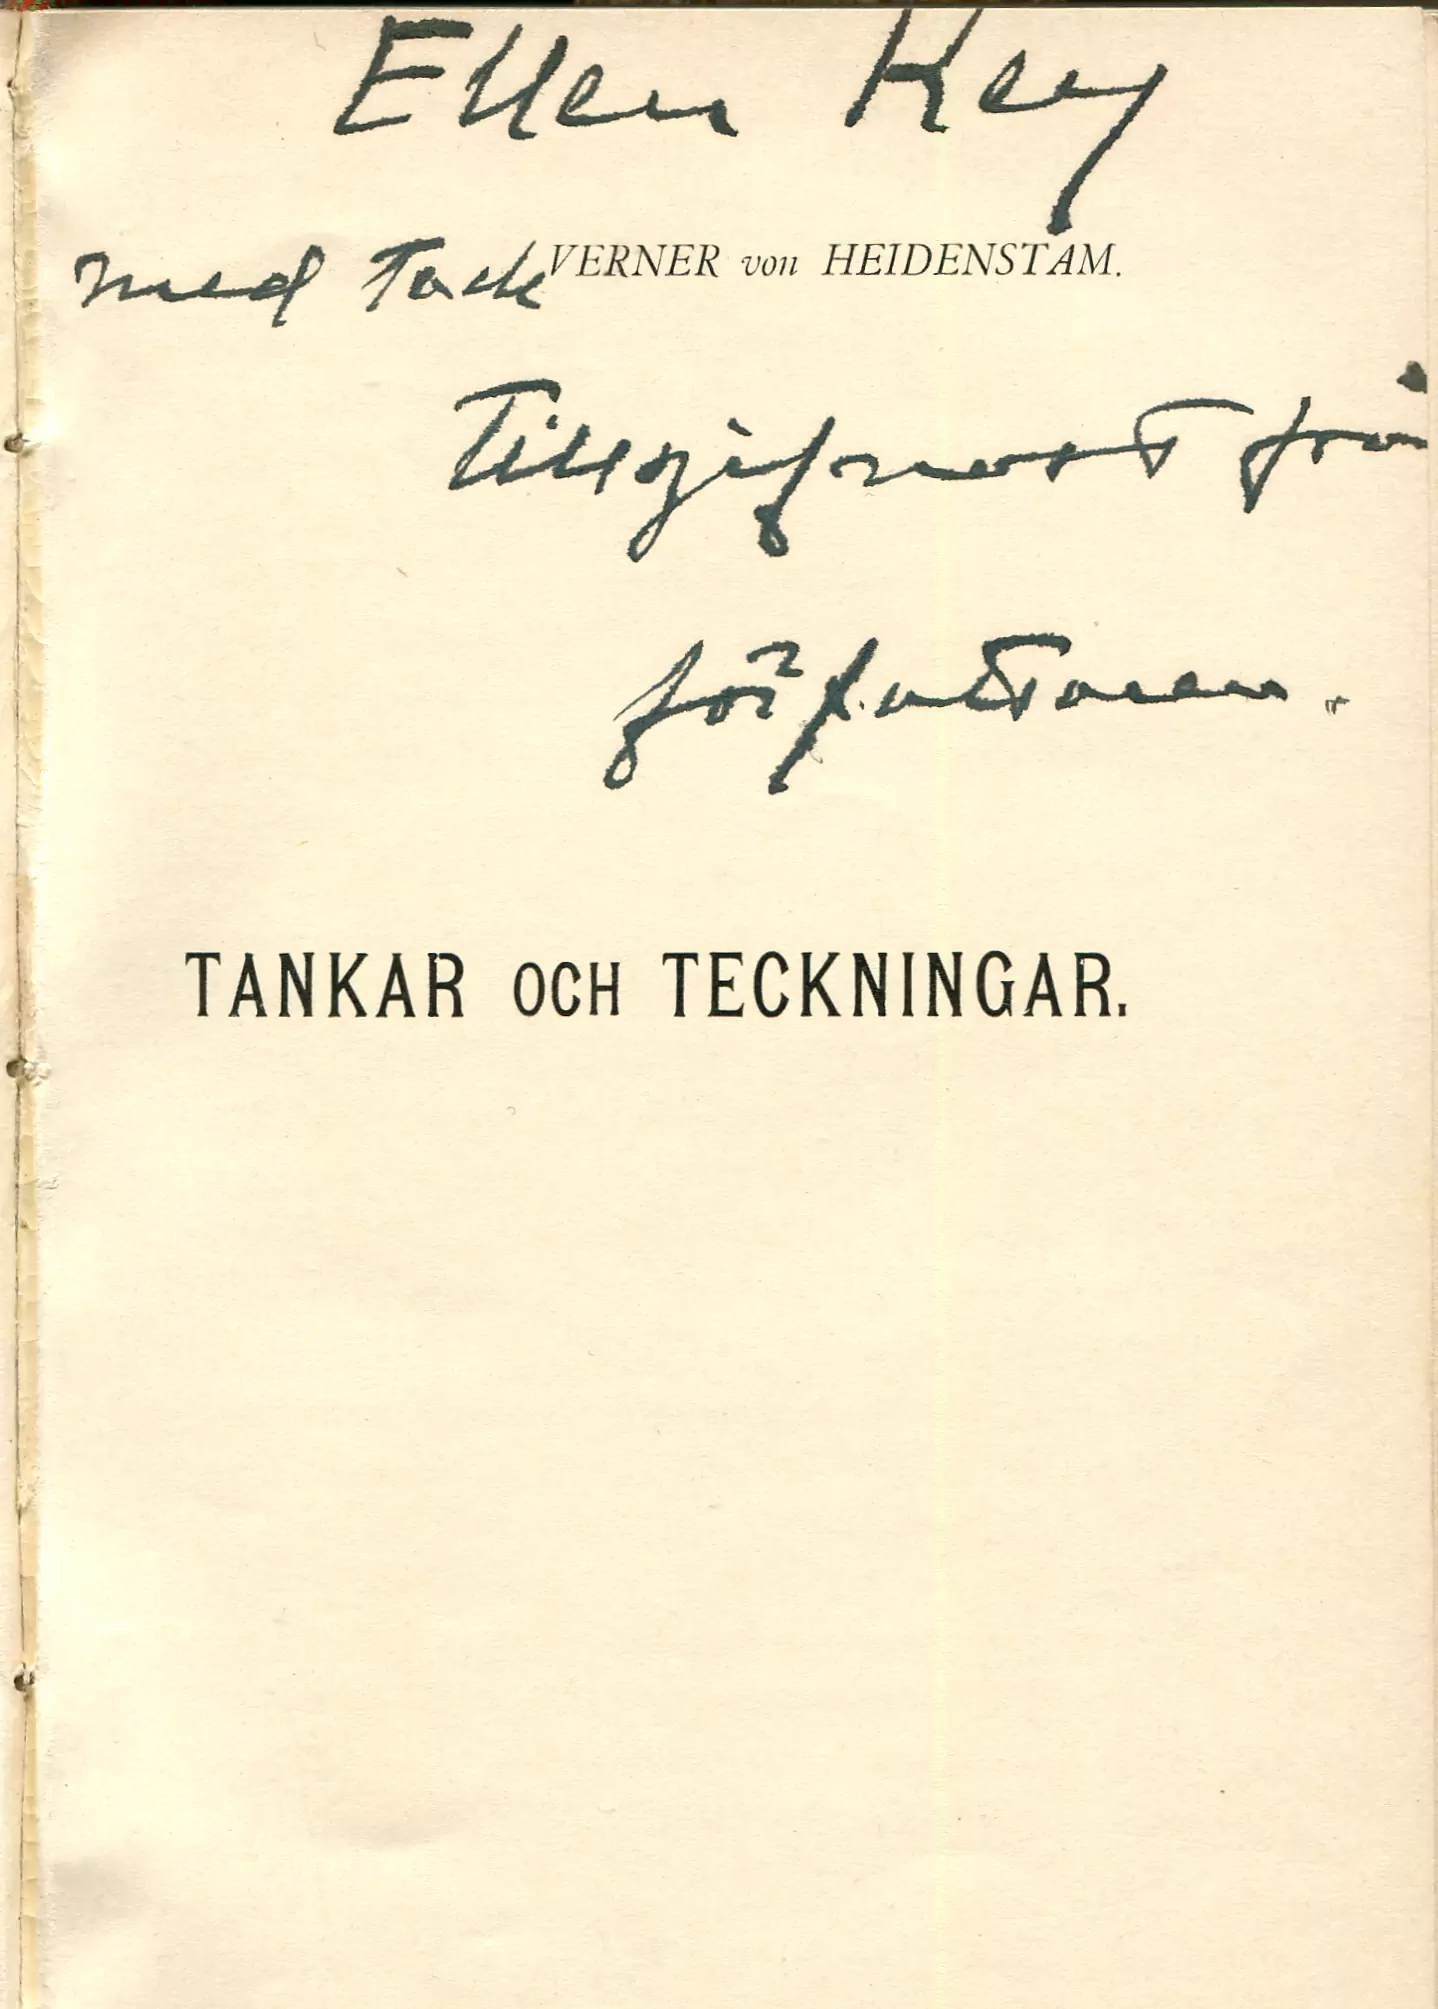 Tankar och teckningar, Stockholm 1899